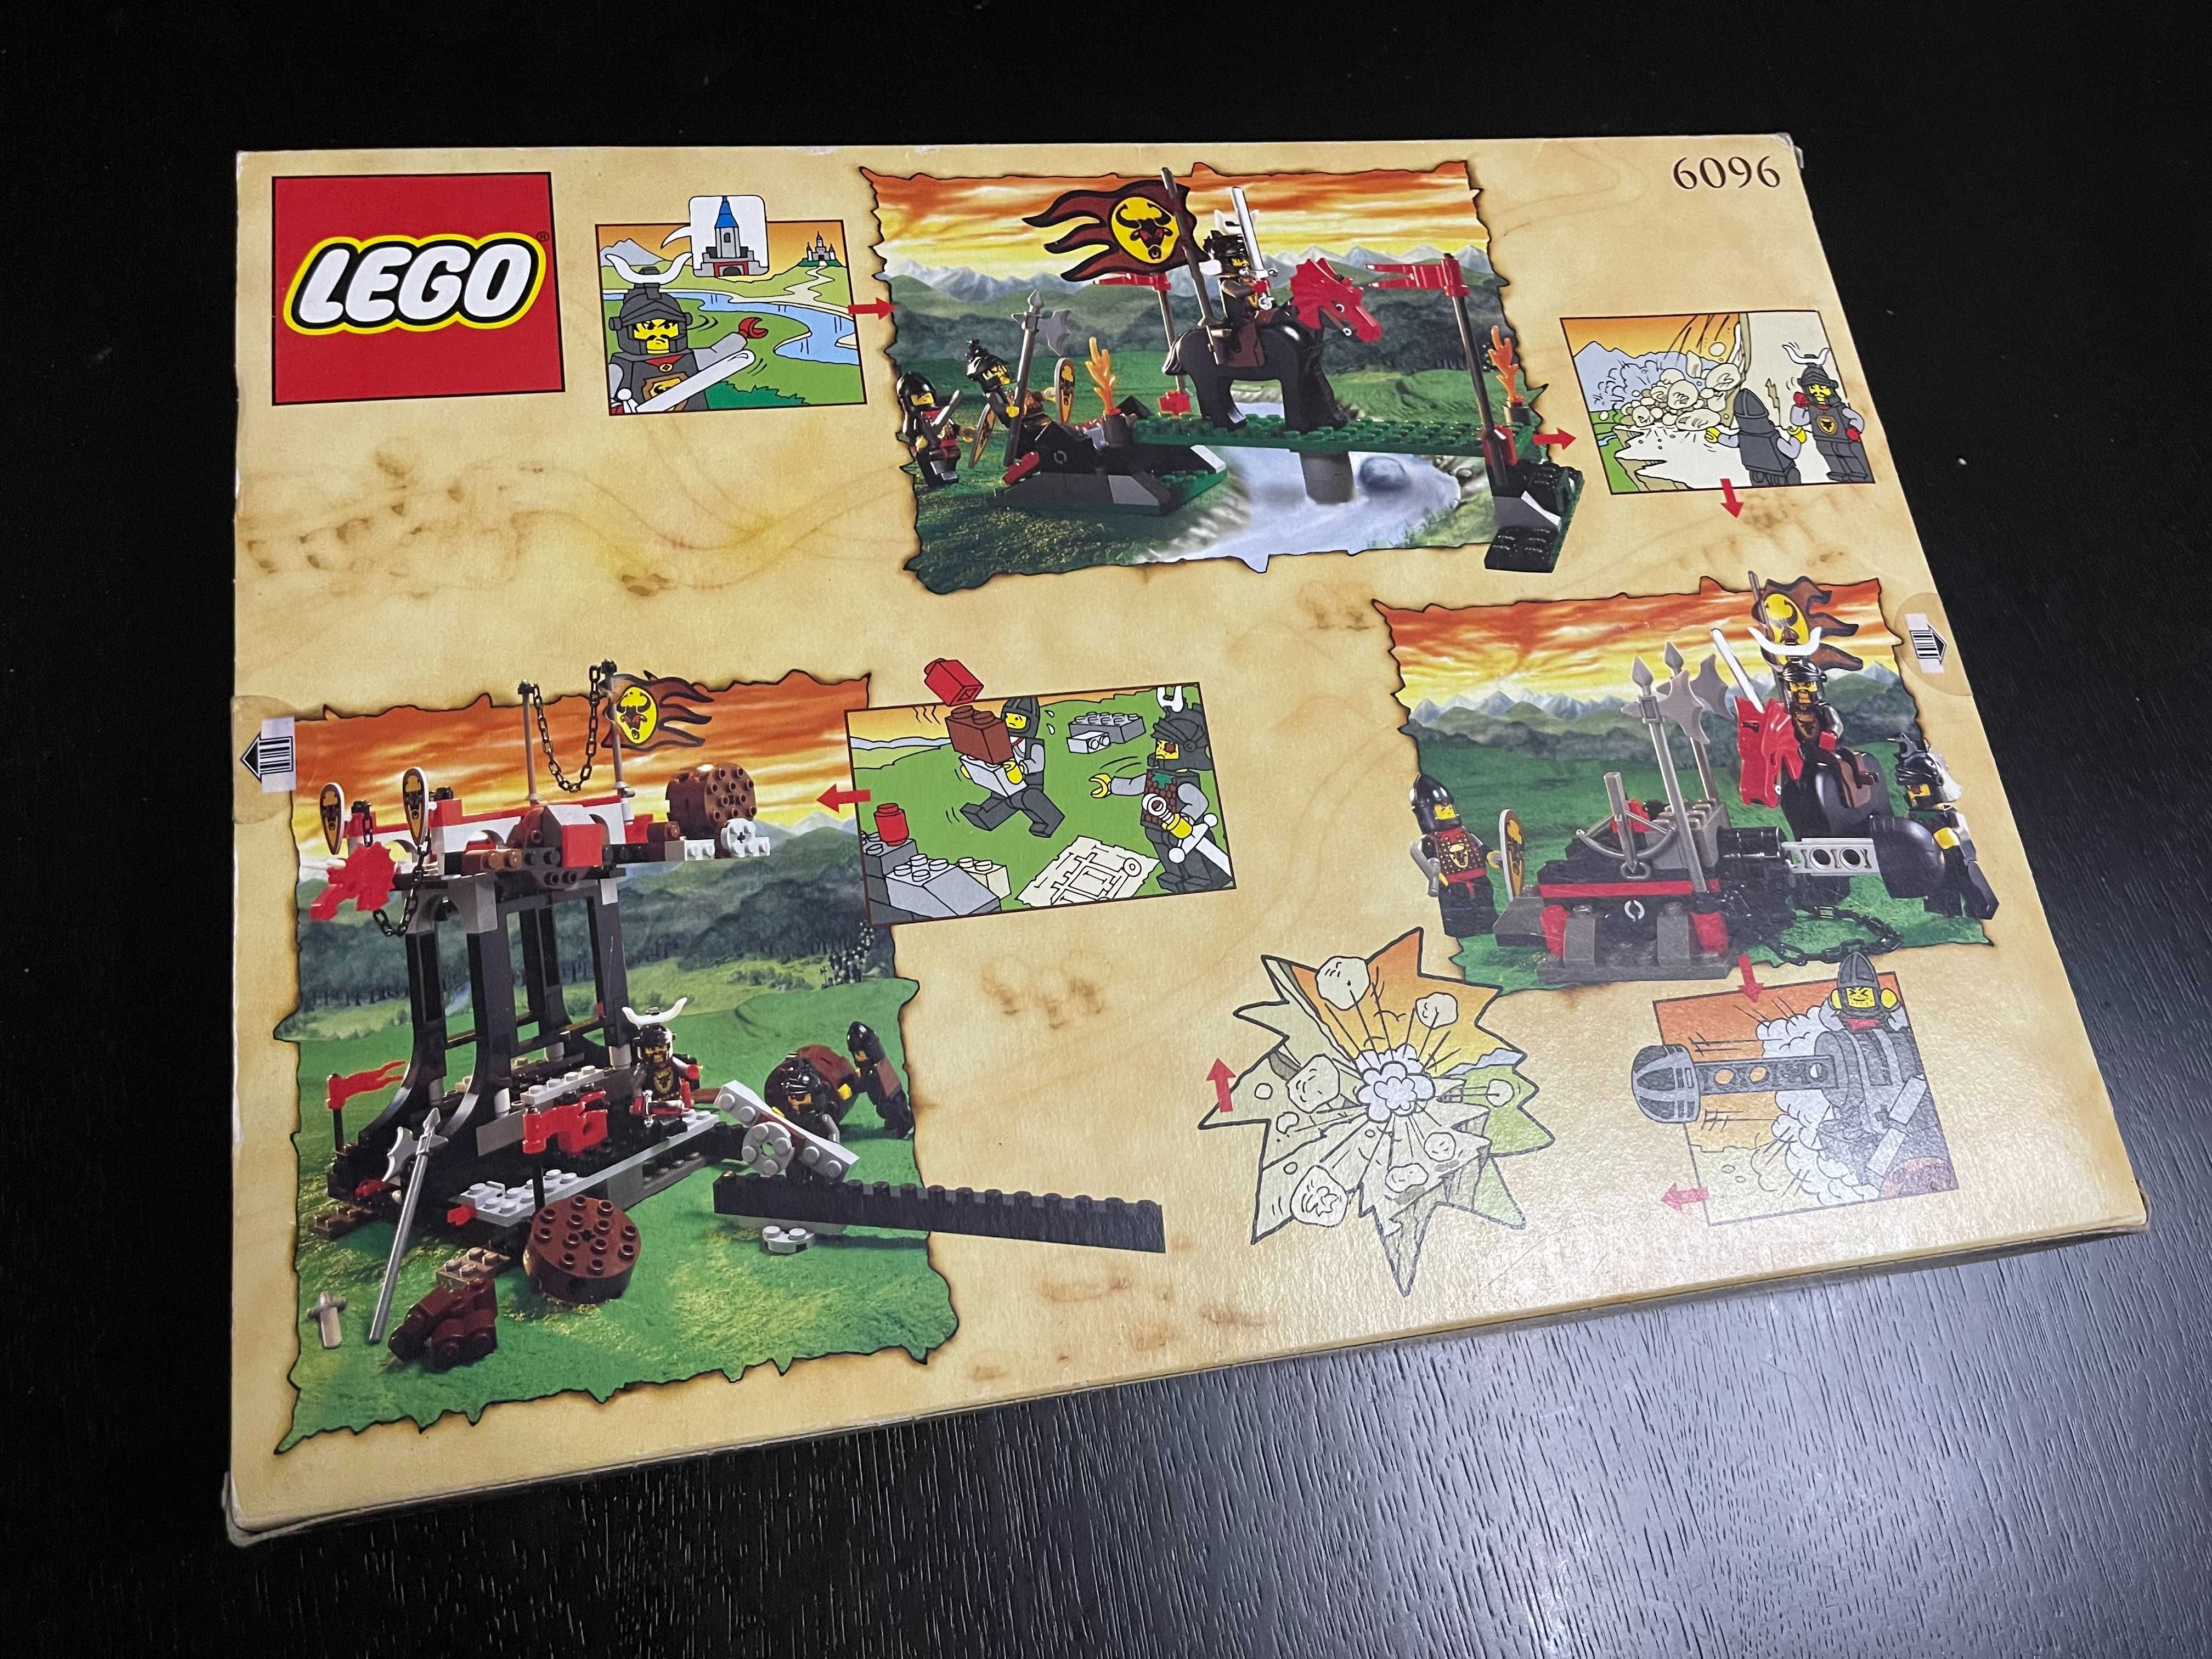 LEGO Castle: Bull’s Attack (6096)